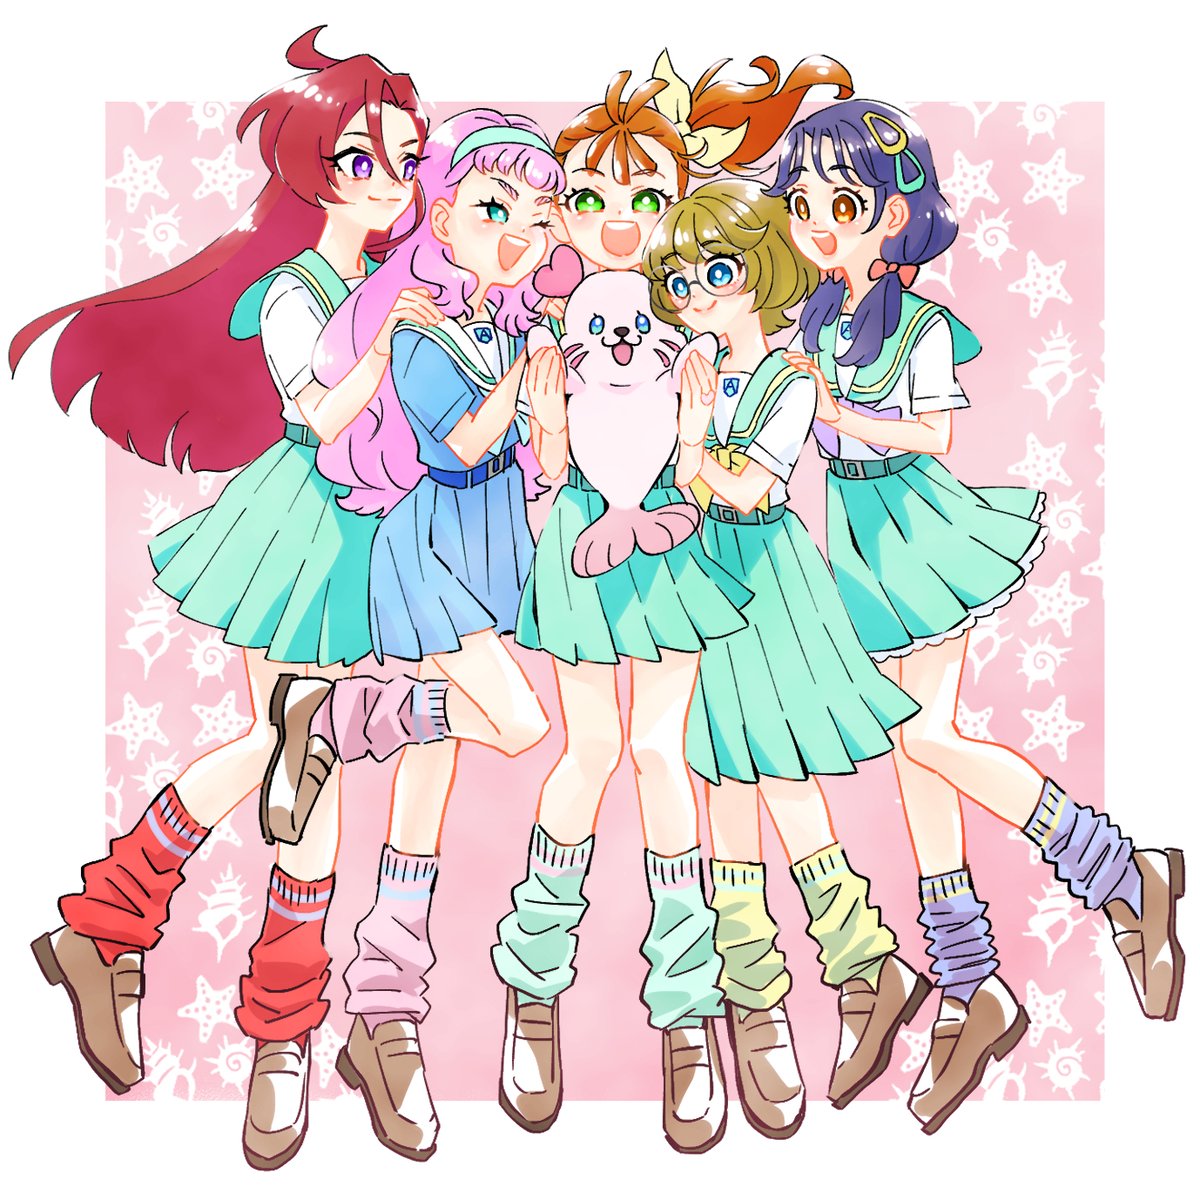 multiple girls school uniform smile skirt pink hair purple hair glasses  illustration images